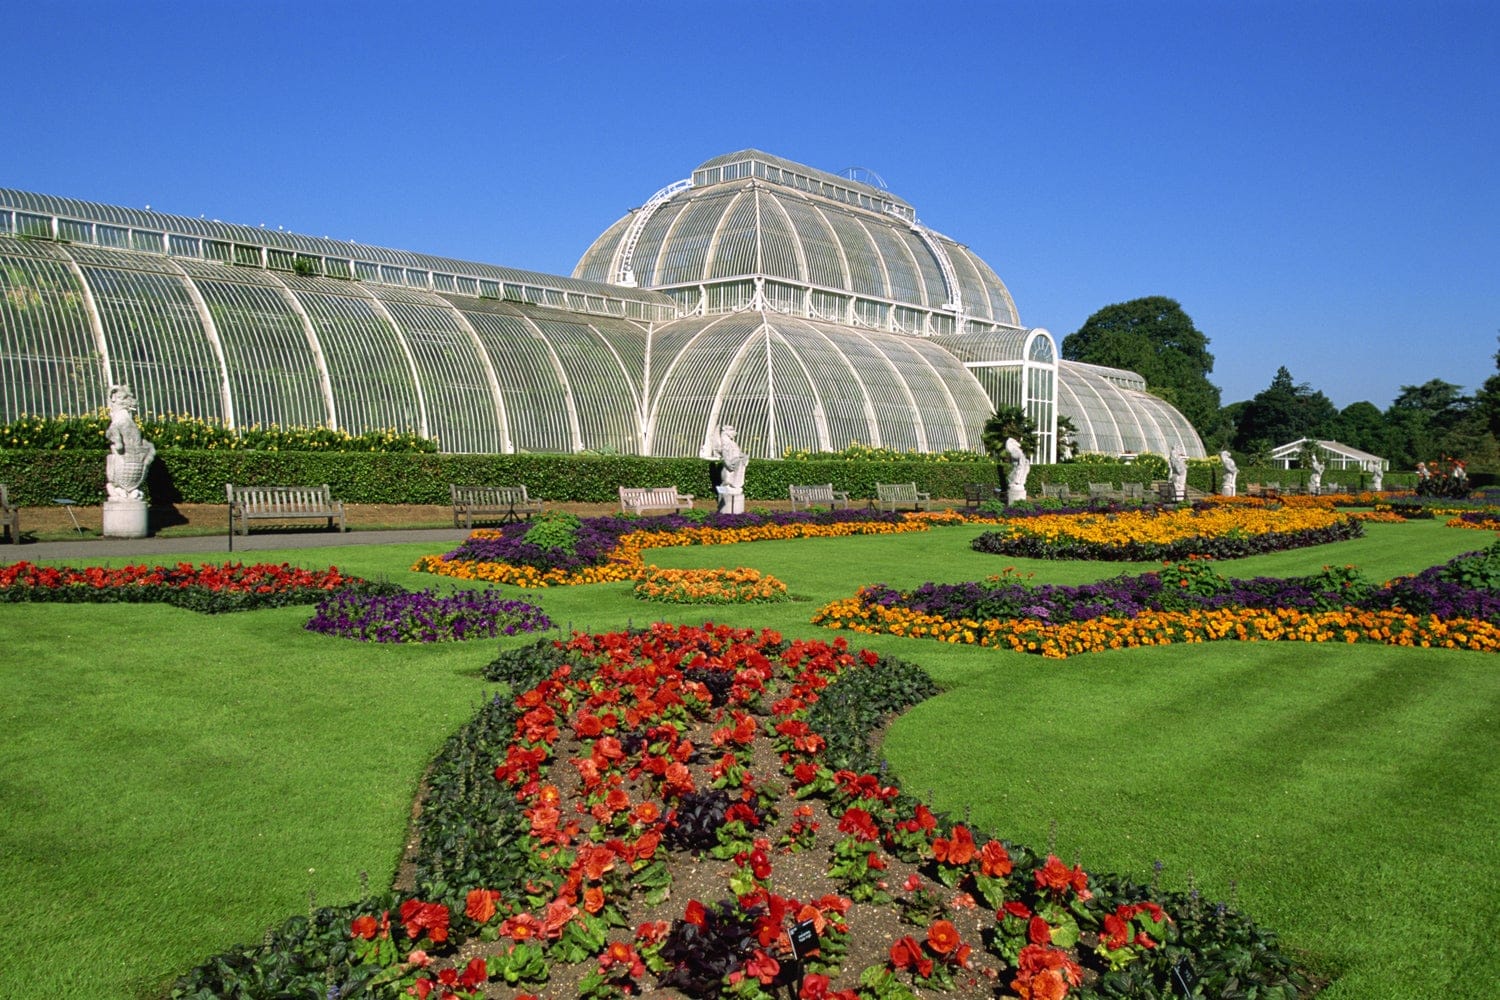 Kew Royal Botanic Gardens